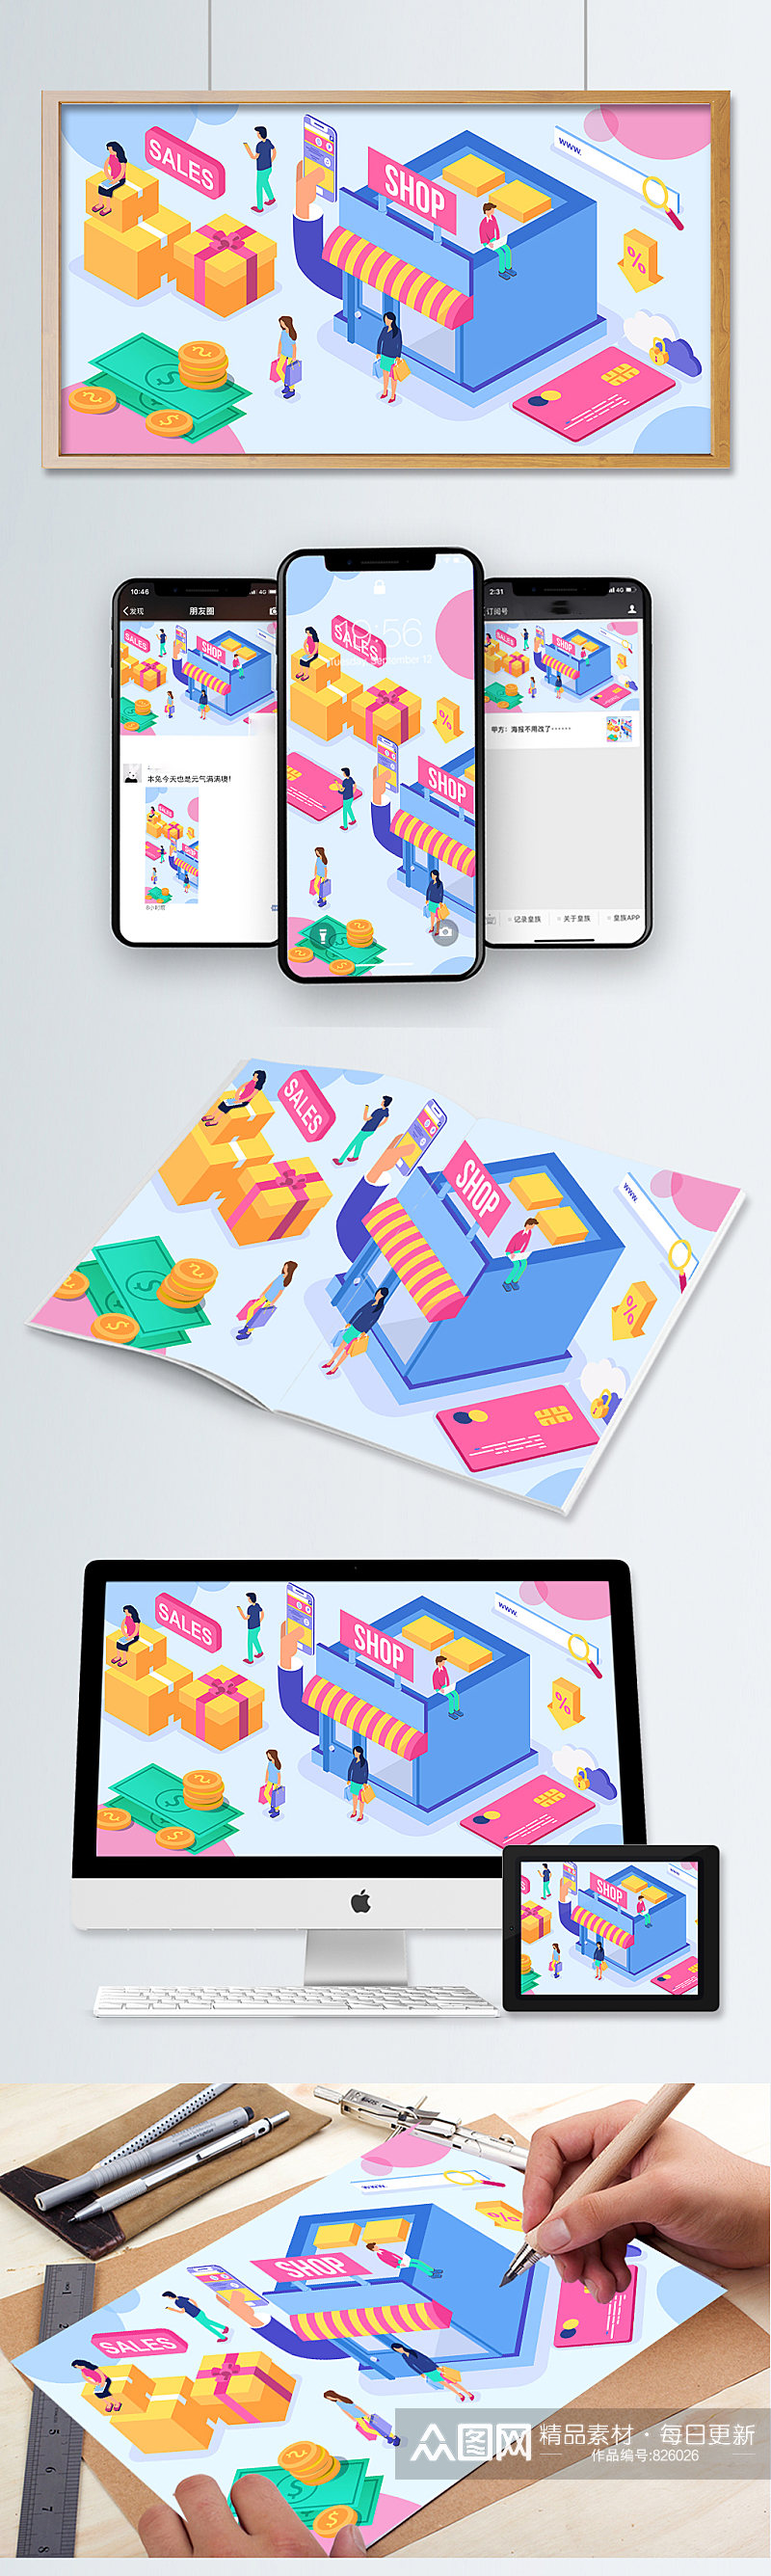 购物节手机网页UI彩色海报界面设计素材